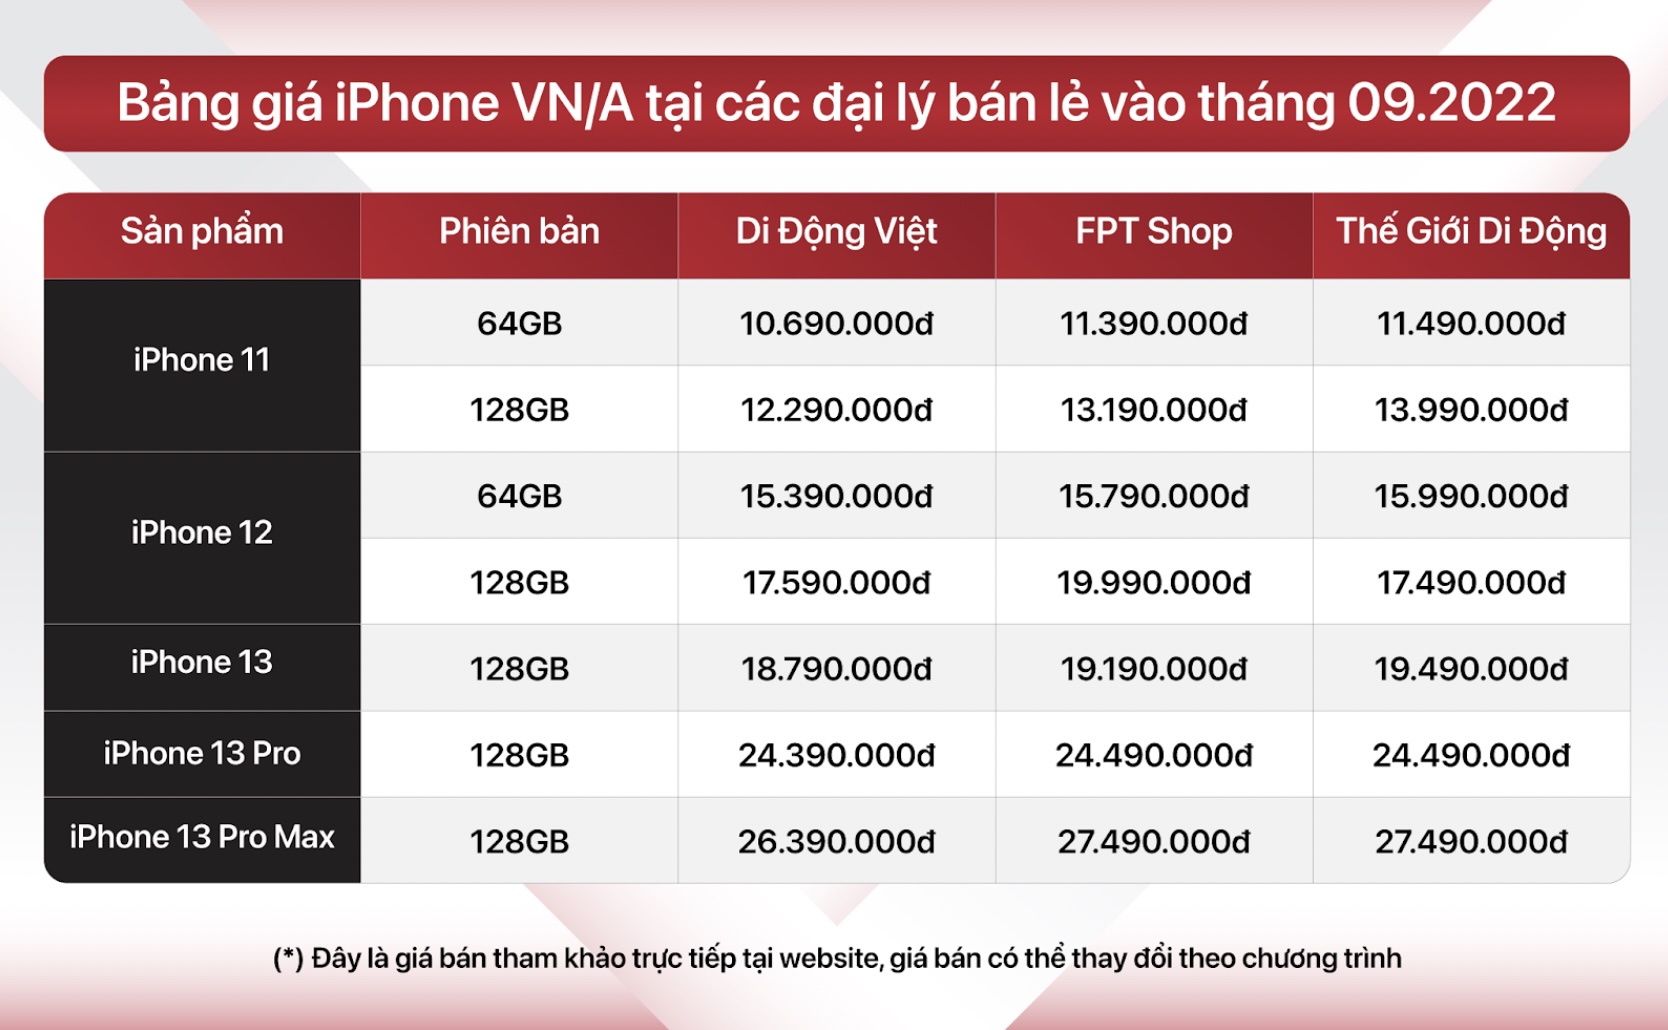 Bảng giá iPhone VN/A tại các đại lý bản lẻ tháng 9/2022